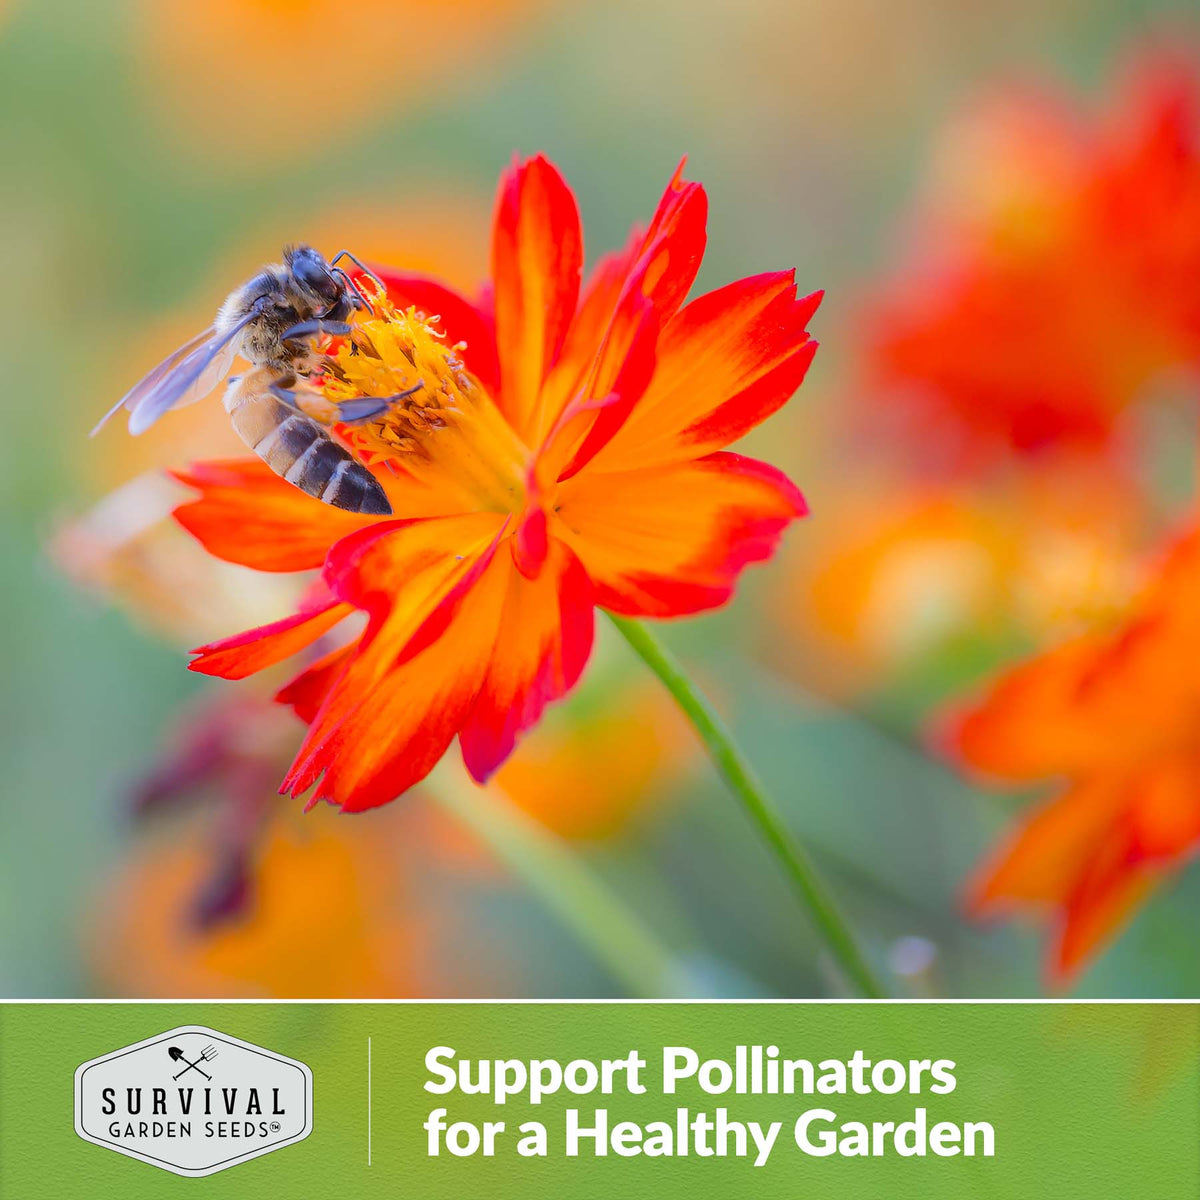 Cosmos support pollinators for a healthy garden